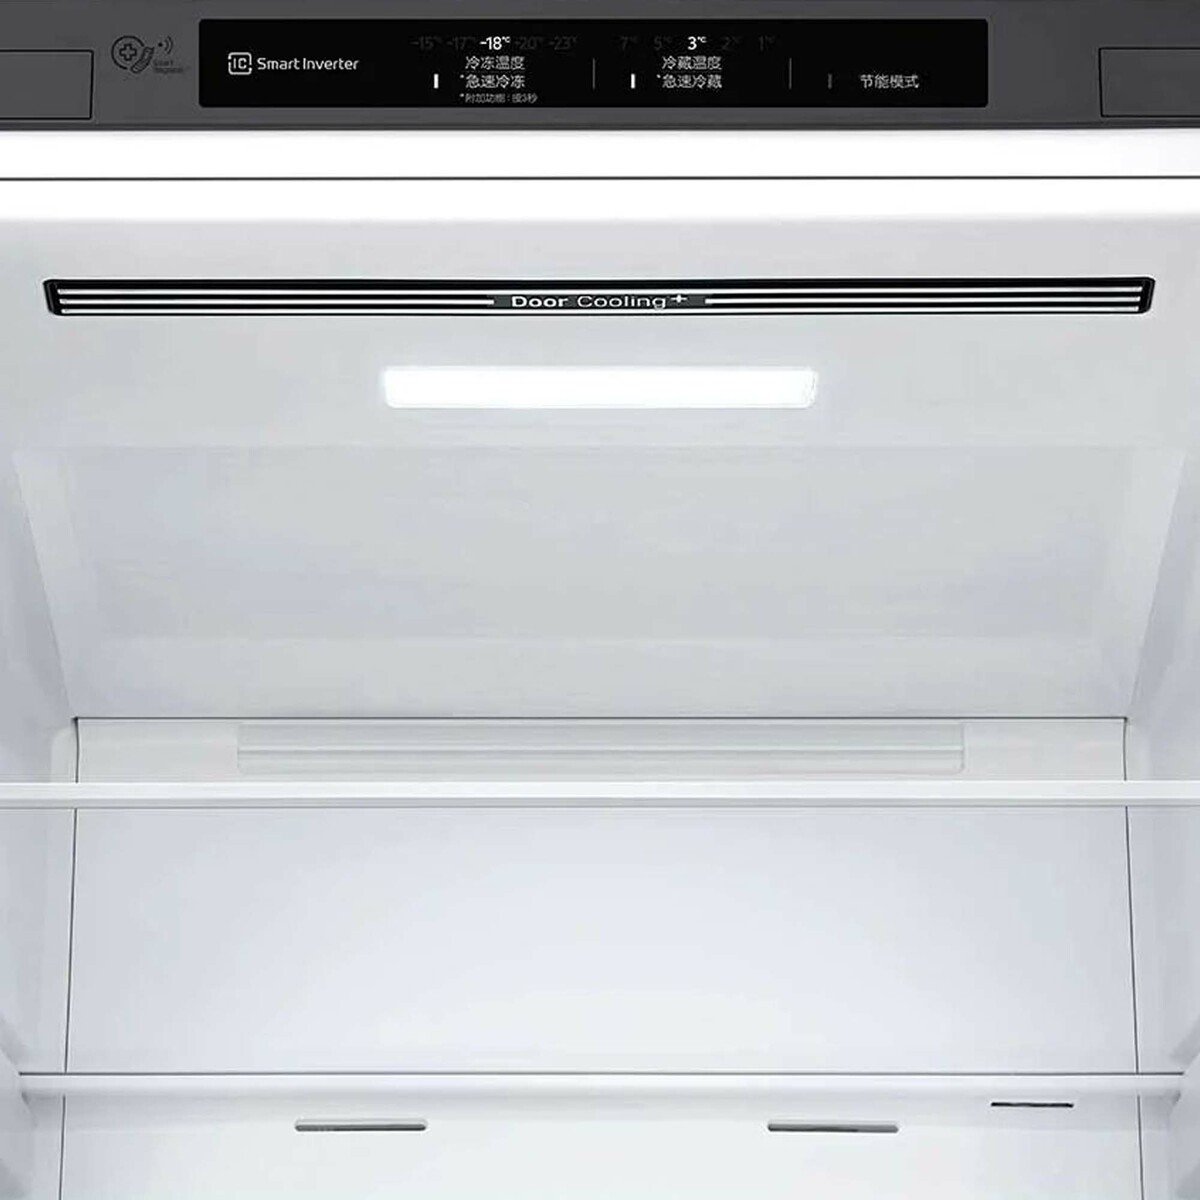 LG Bottom Freezer Refrigerator GR-B479NLJM 341LTR,Platinum Silver, Smart Inverter Compressor, Multi Air Flow, Smart Diagnosis™ 